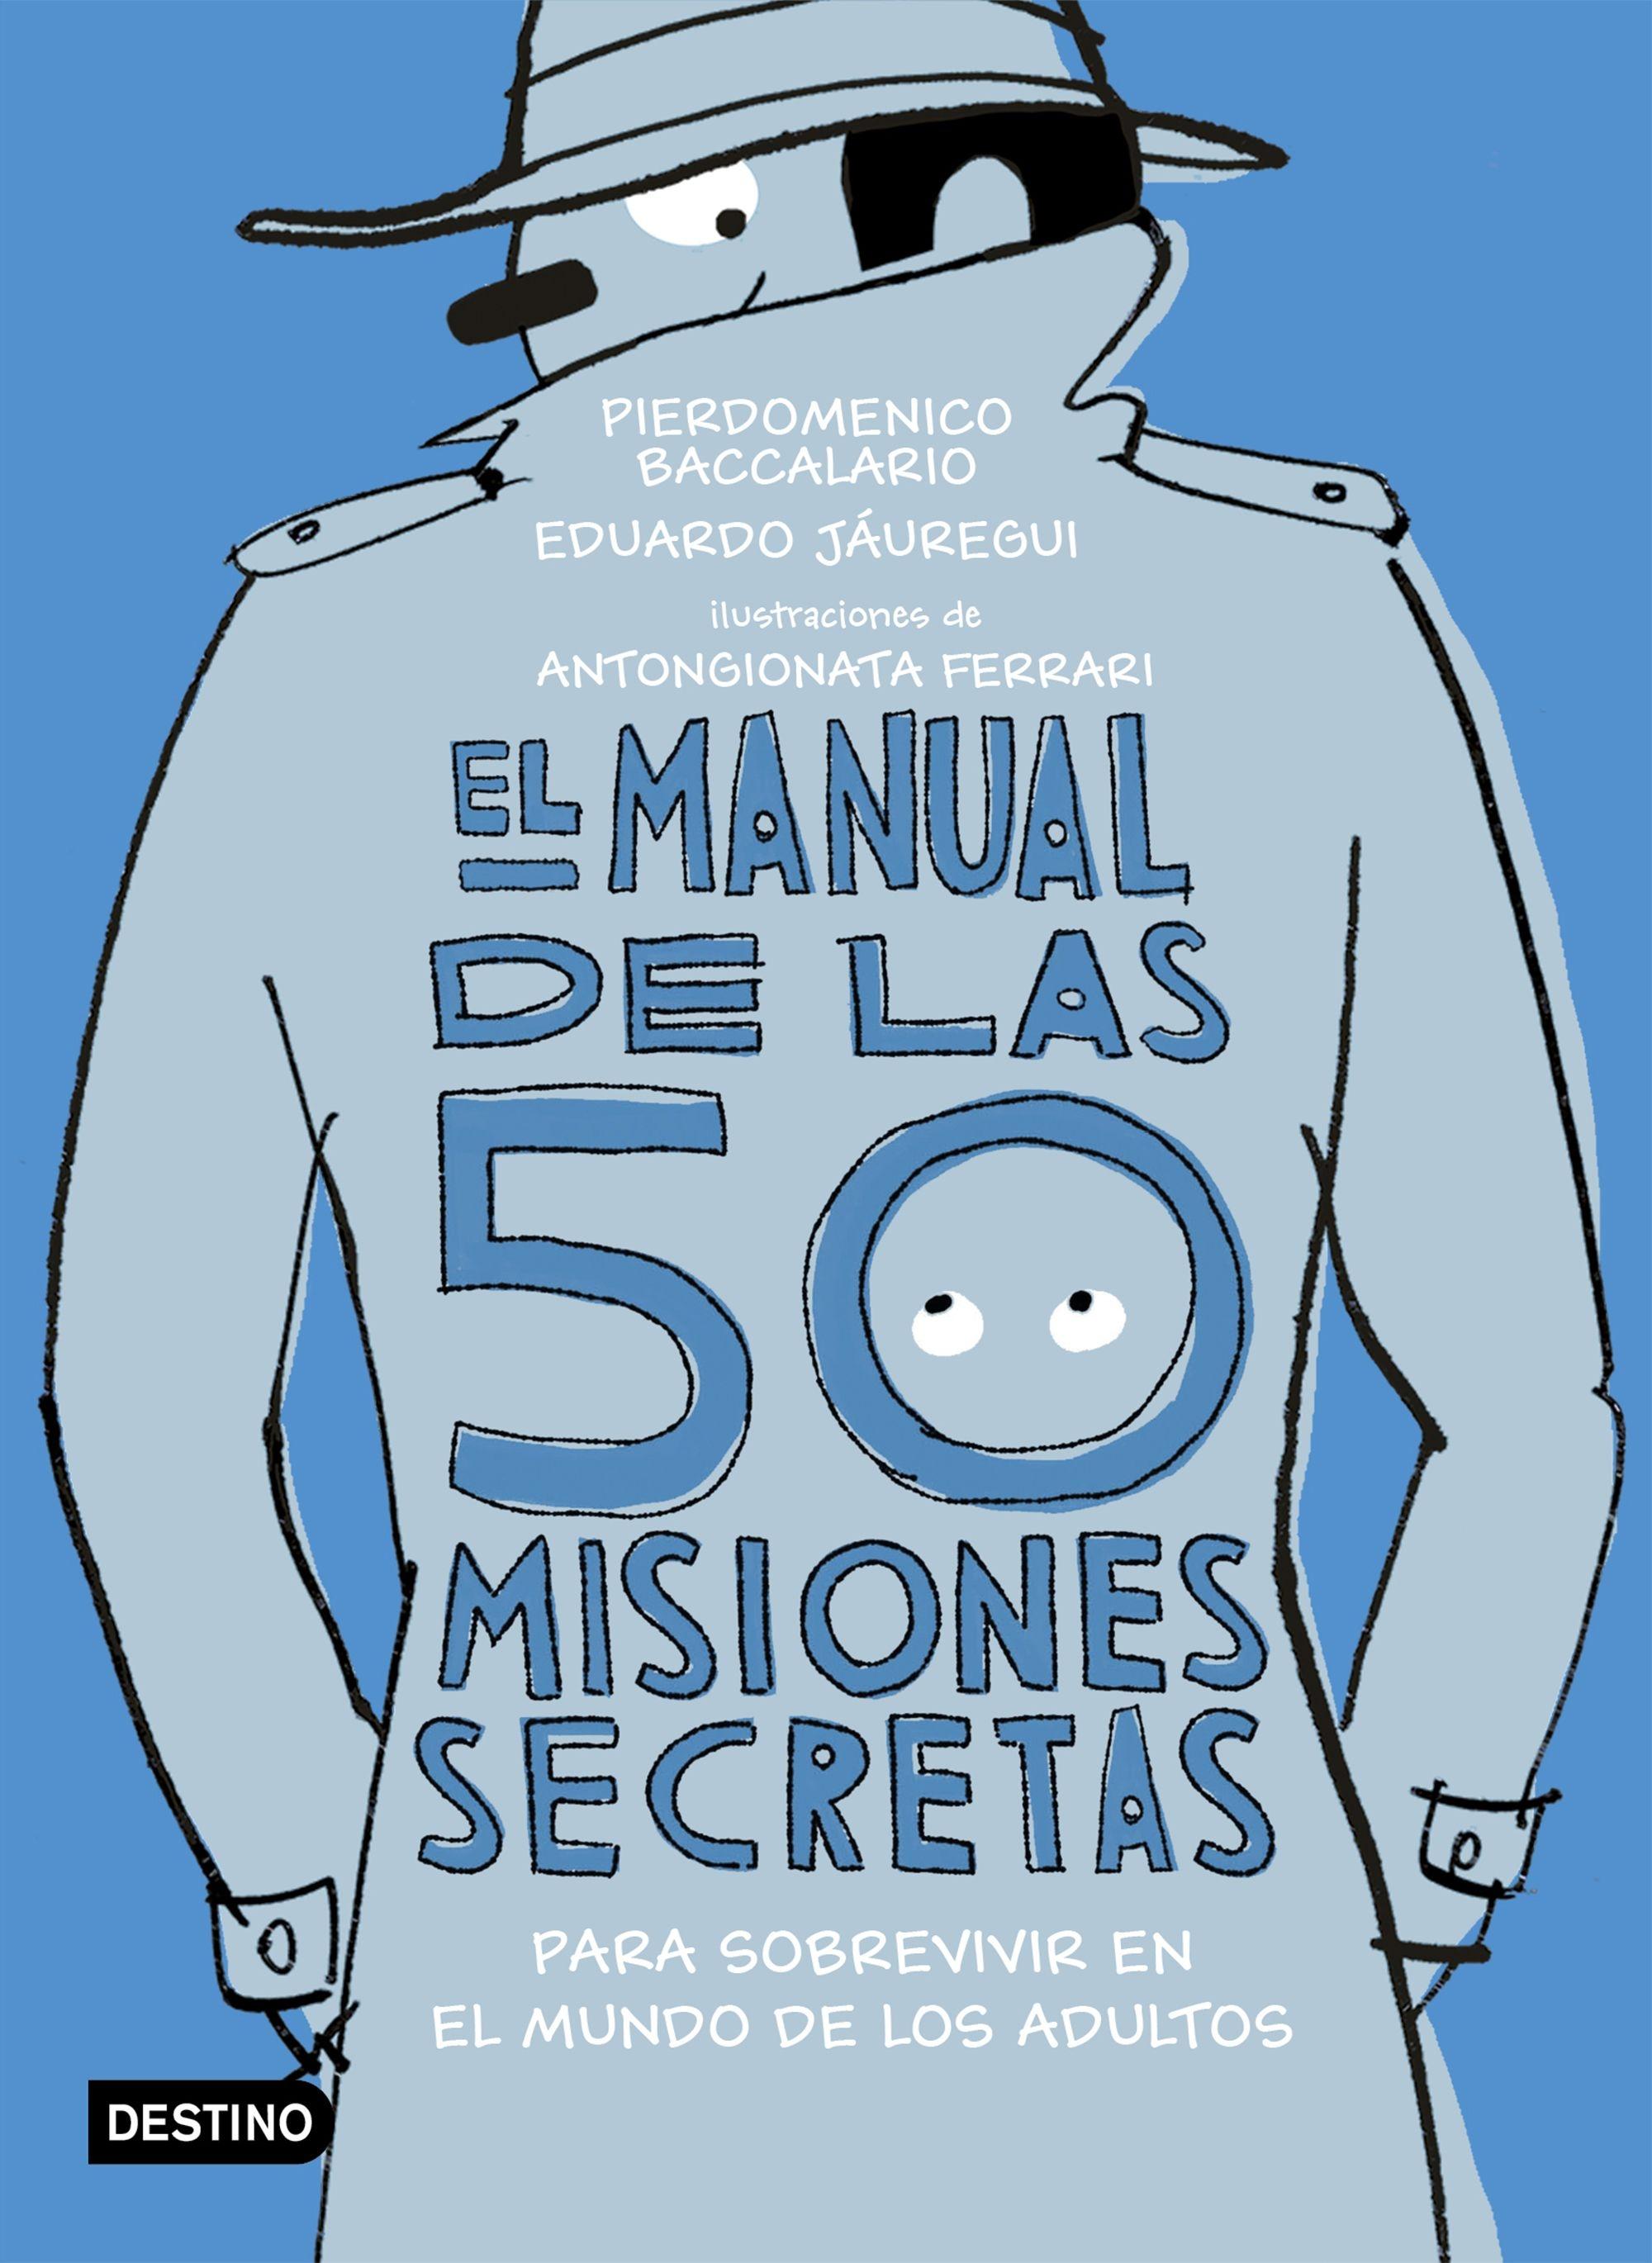 El Manual de las 50 Misiones Secretas para Sobrevivir en el Mundo de los Adultos "Ilustraciones de Antongionata Ferrari". 